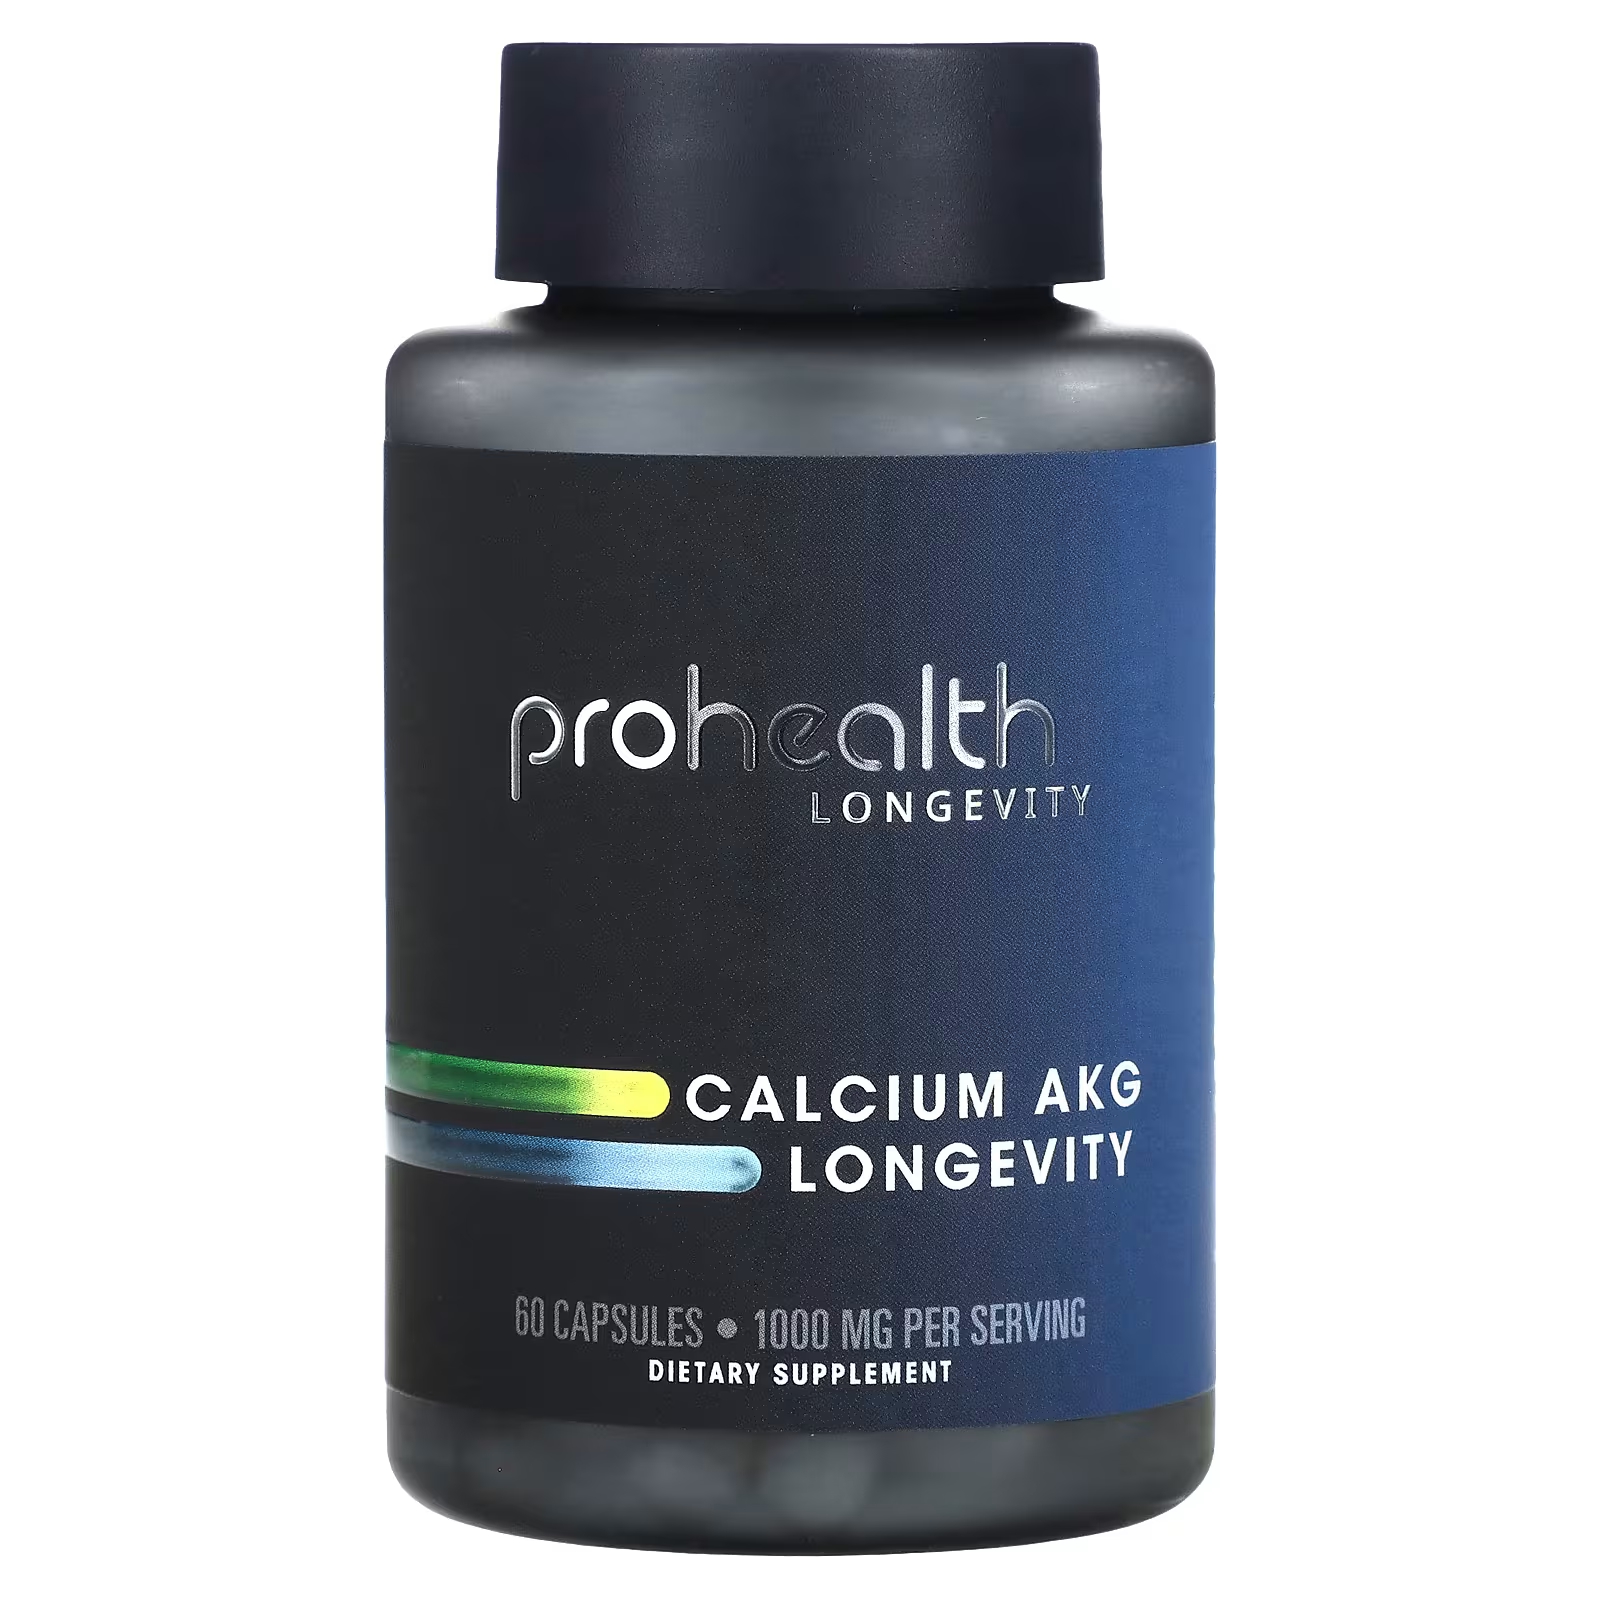 Пищевая добавка ProHealth Longevity Calcium AKG Longevity 1000 мг